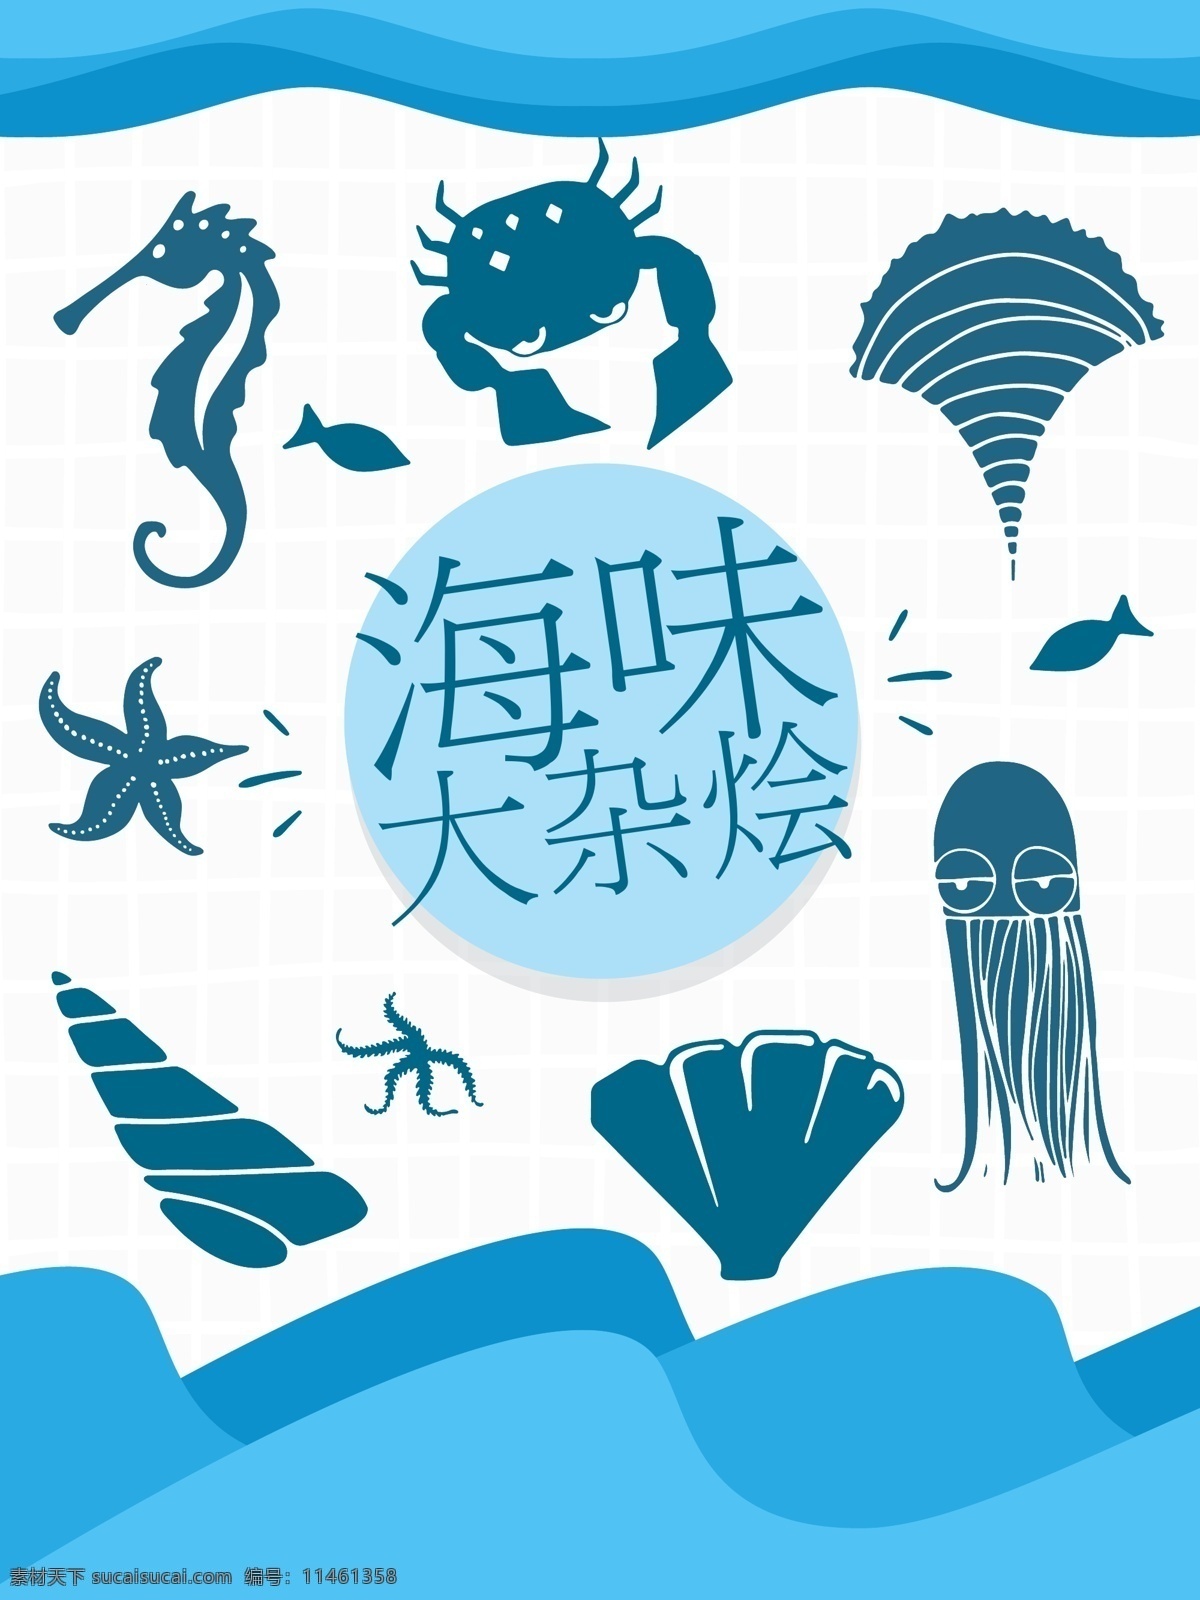 海鲜 包装设计 鲜美 海味 创意 卡通 水产品 海星 美食 包装 水产 剪影 贝壳 海螺 海马 螃蟹 章鱼